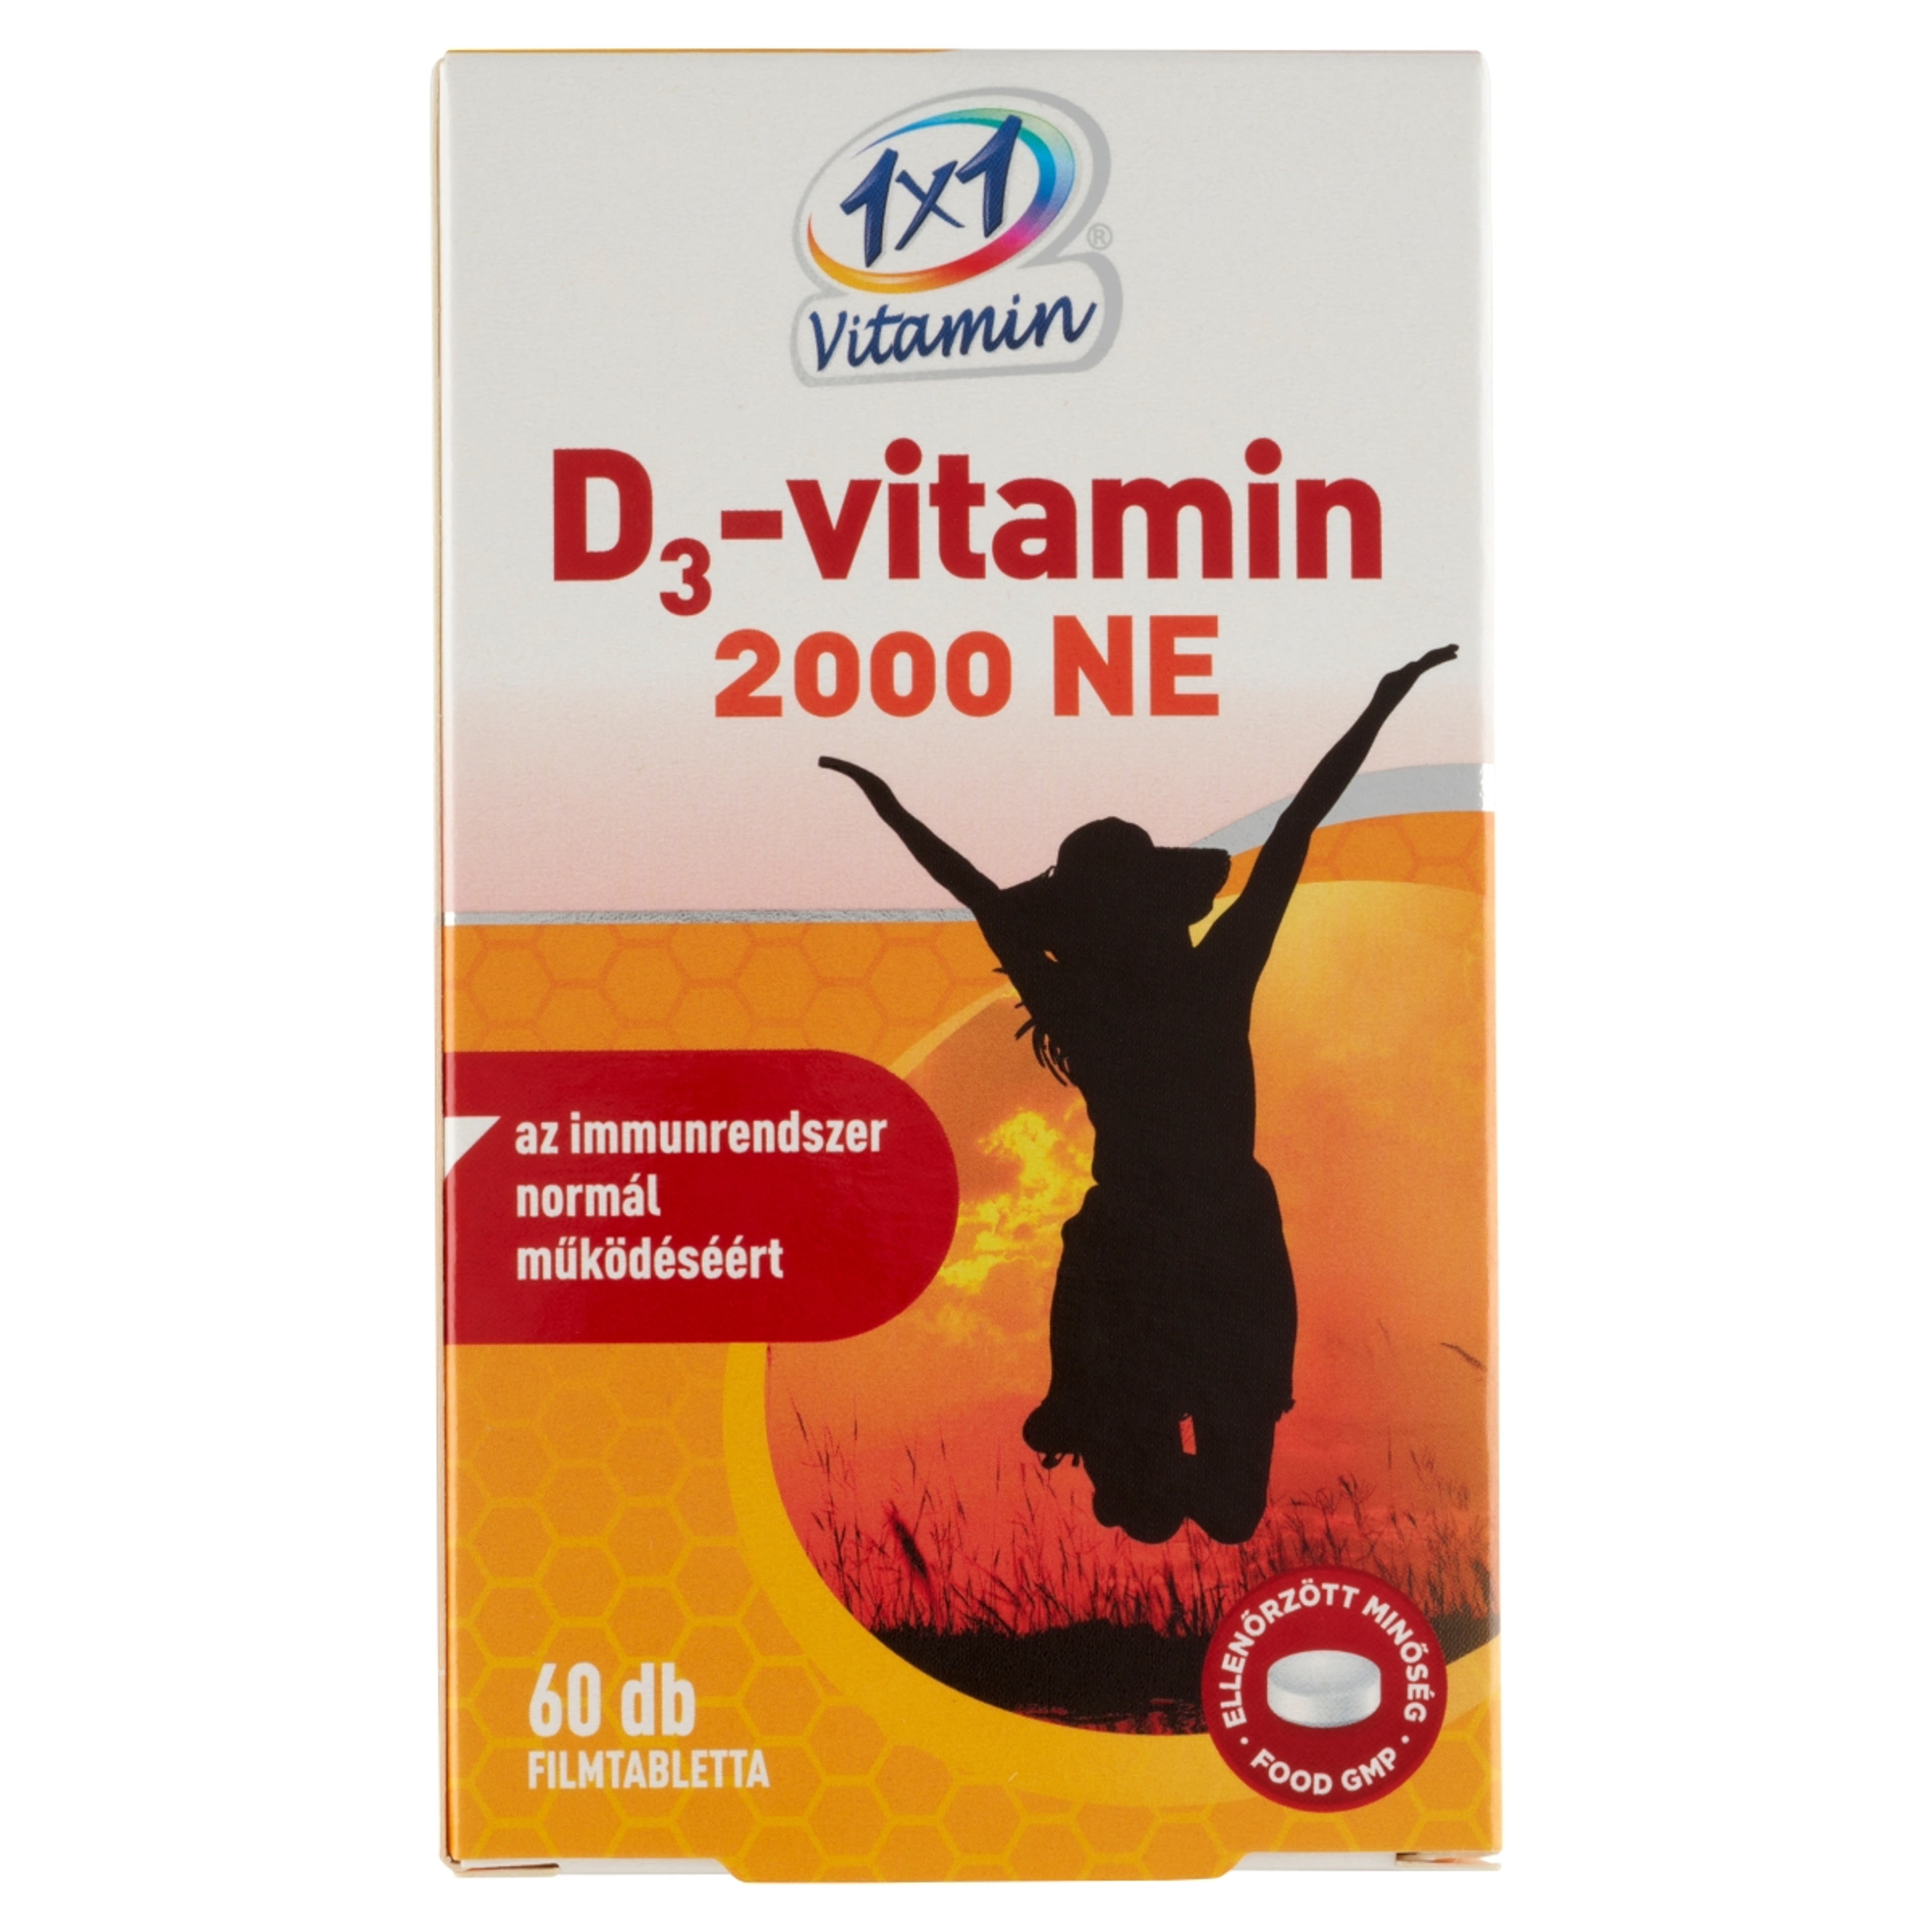 1x1 Vitamin D3 2000Ne filmtabletta - 60 db-1